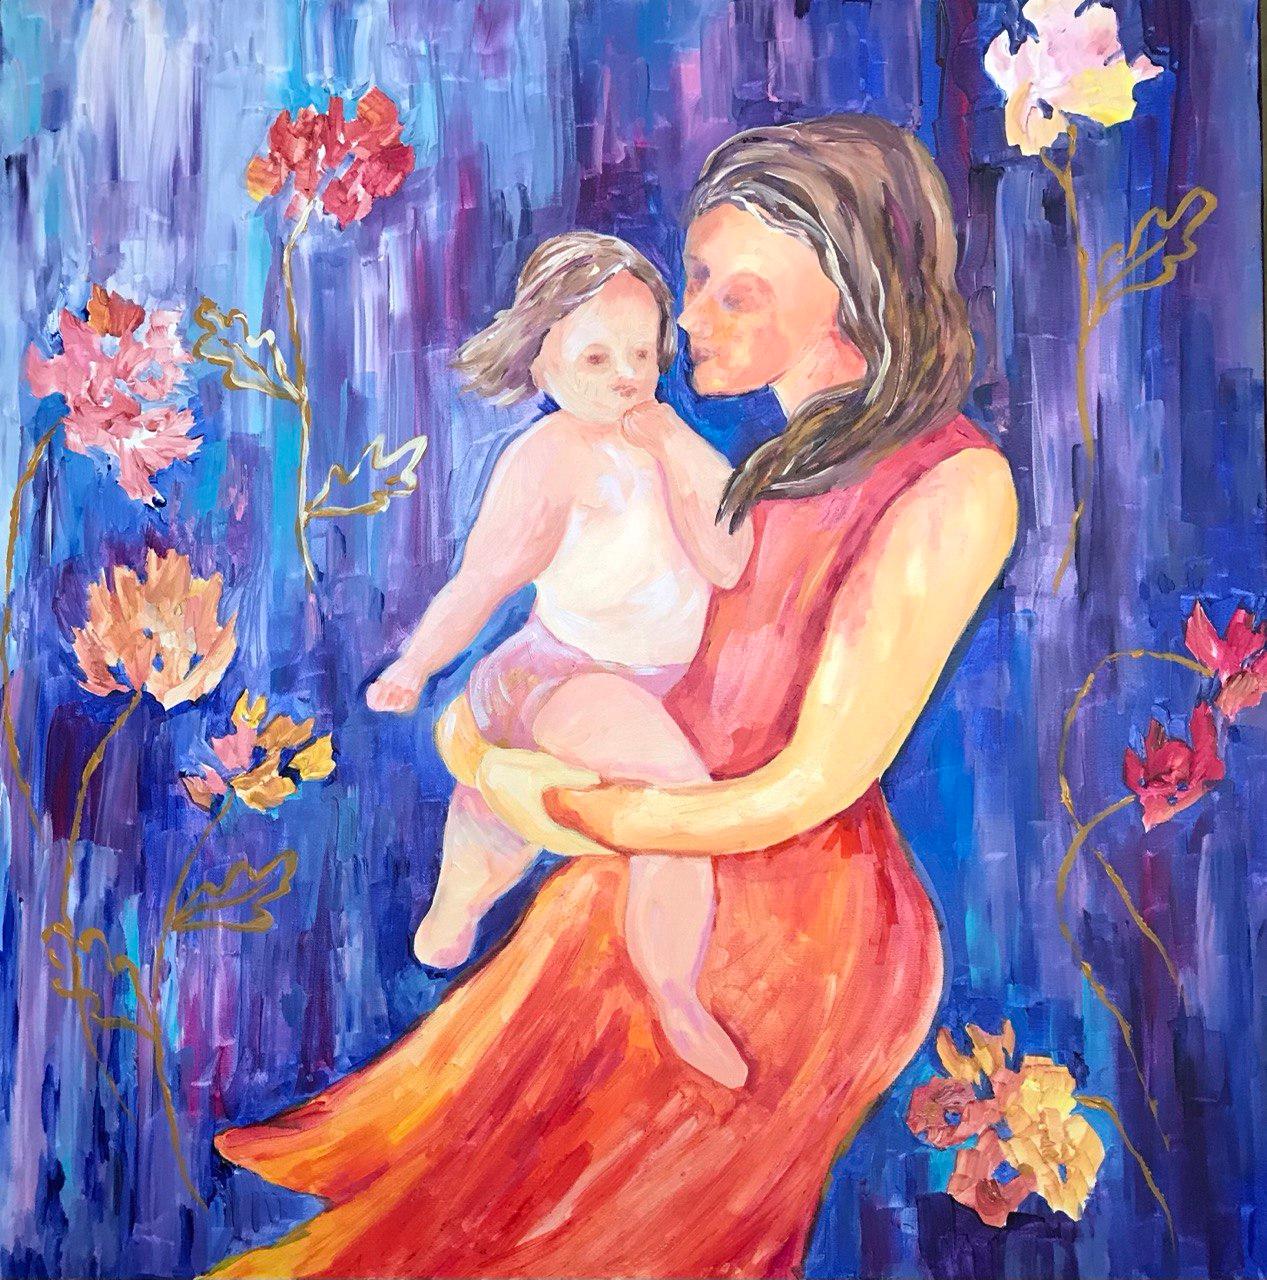 In der neuesten Ausgabe der "The Joy Series: Eine Reise zum inneren Glück" präsentiert die Künstlerin eine fesselnde Darstellung von Liebe und Generationen. In der Mitte des Bildes hält eine Mutter ihr Kind zärtlich in den Armen und verkörpert damit